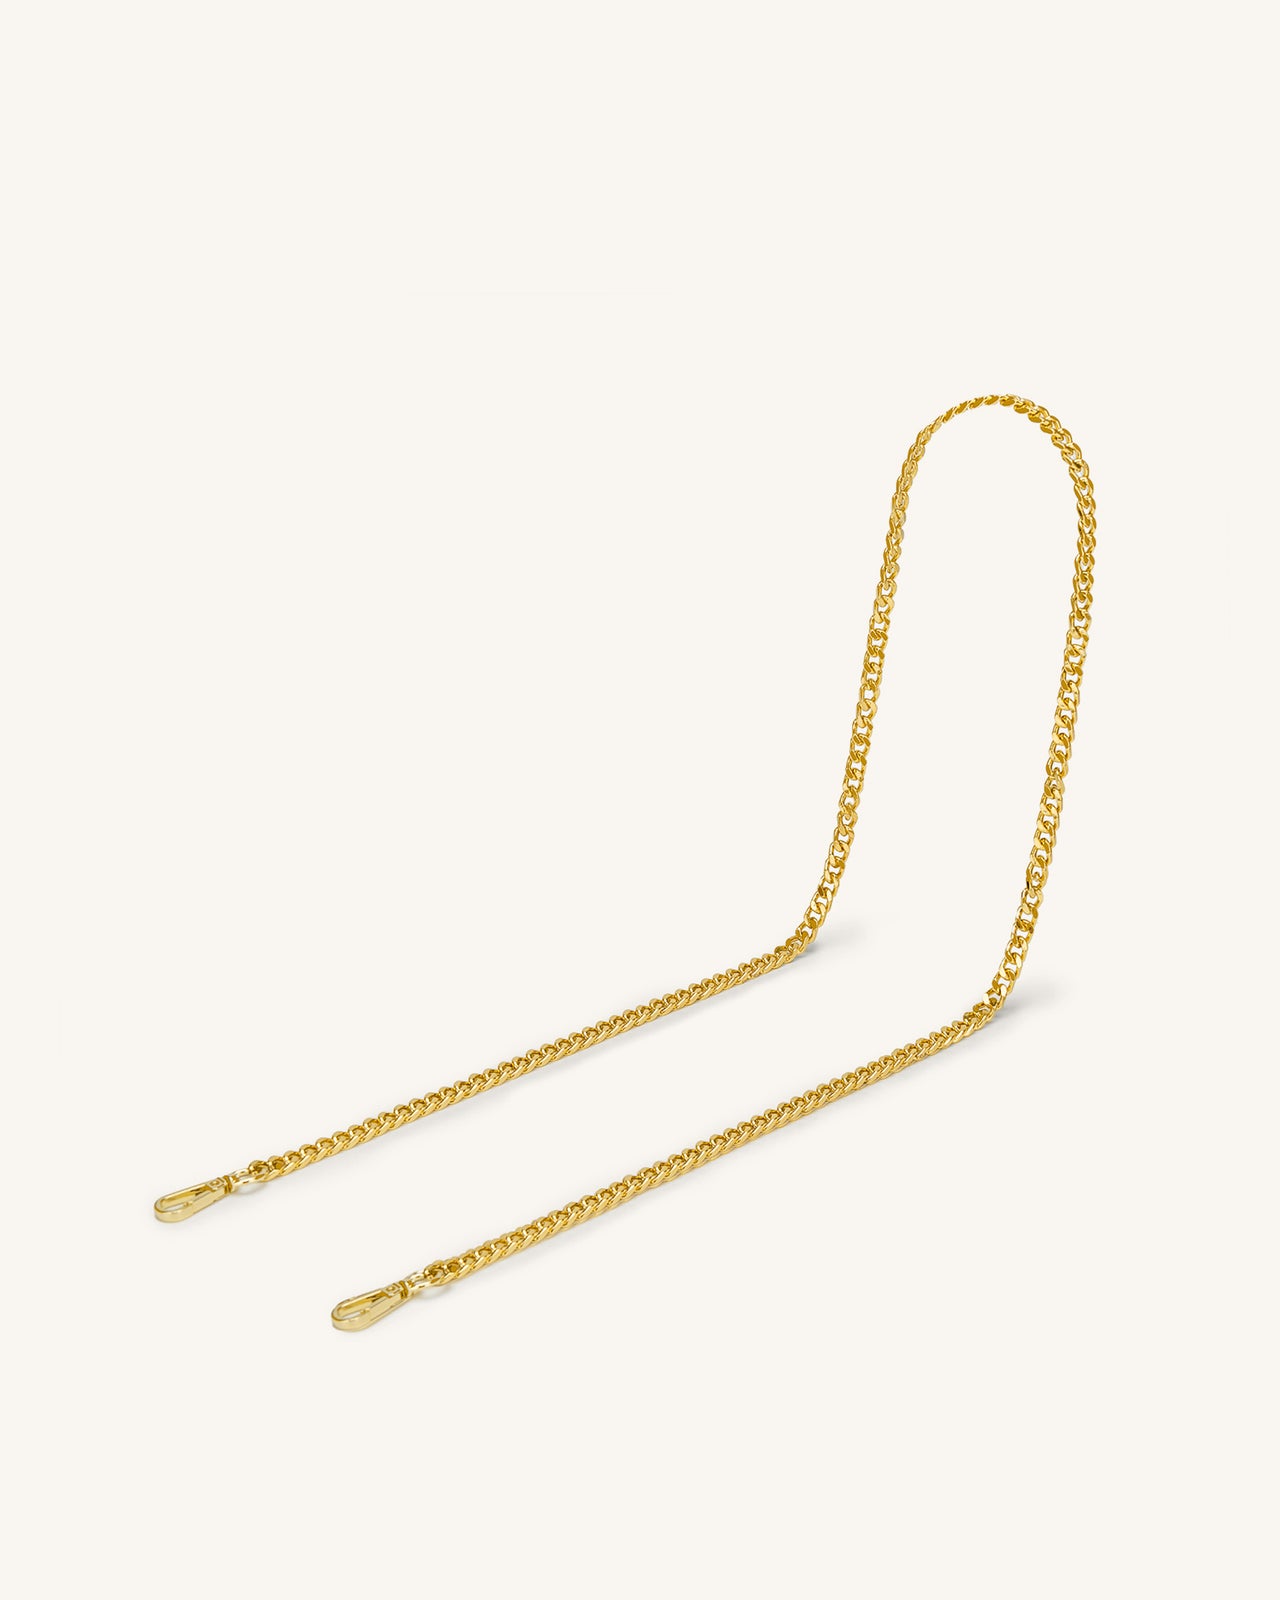 Iris Golden Chain Strap